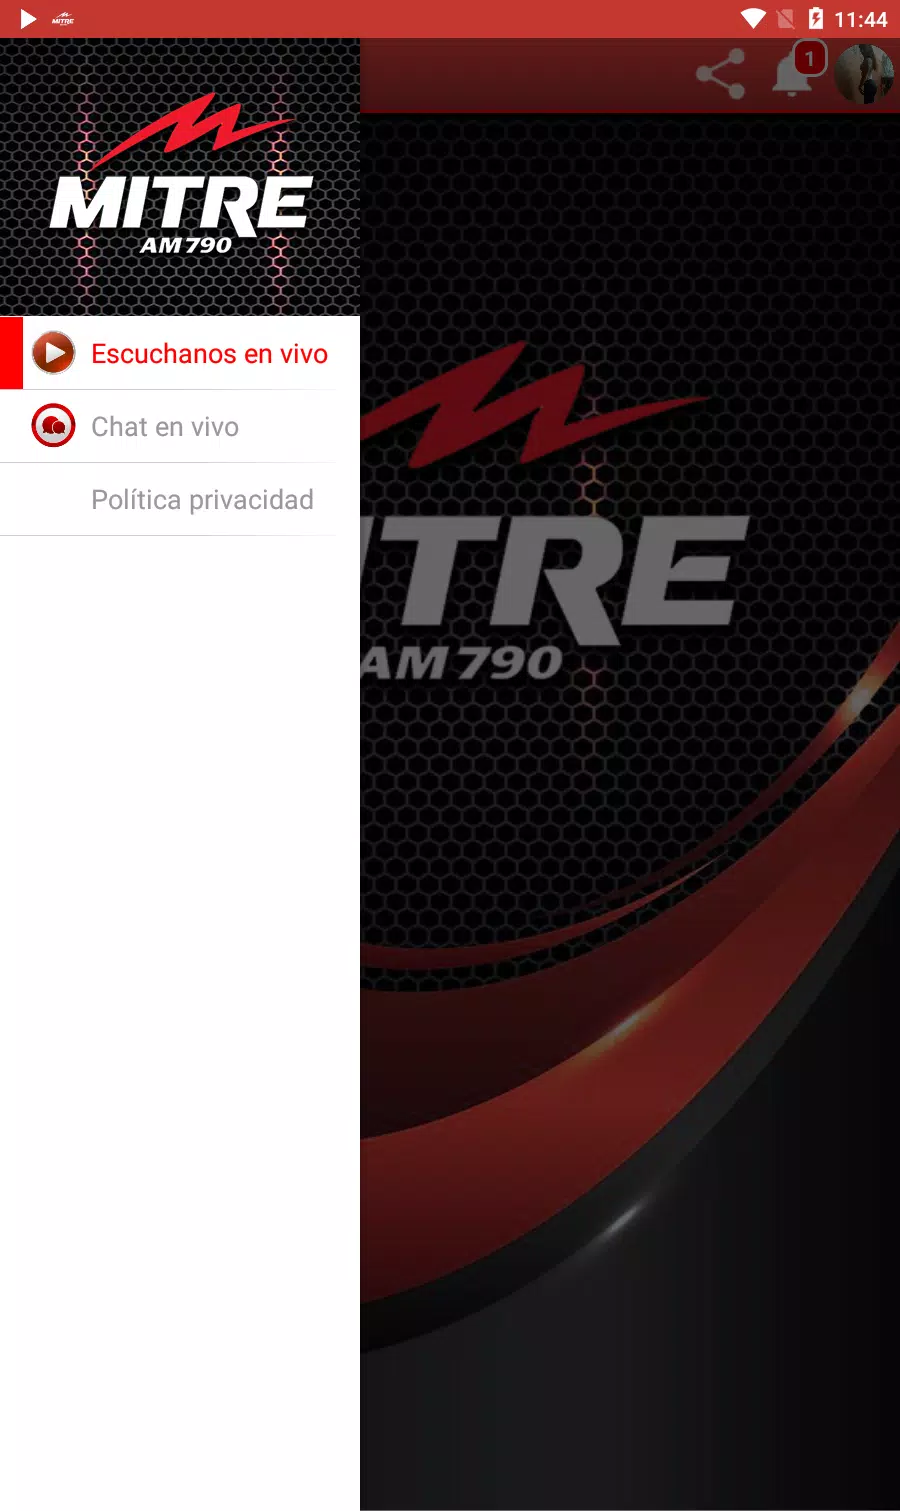 Radio MITRE AM 790 - Desde Argentina - En vivo for Android - APK Download